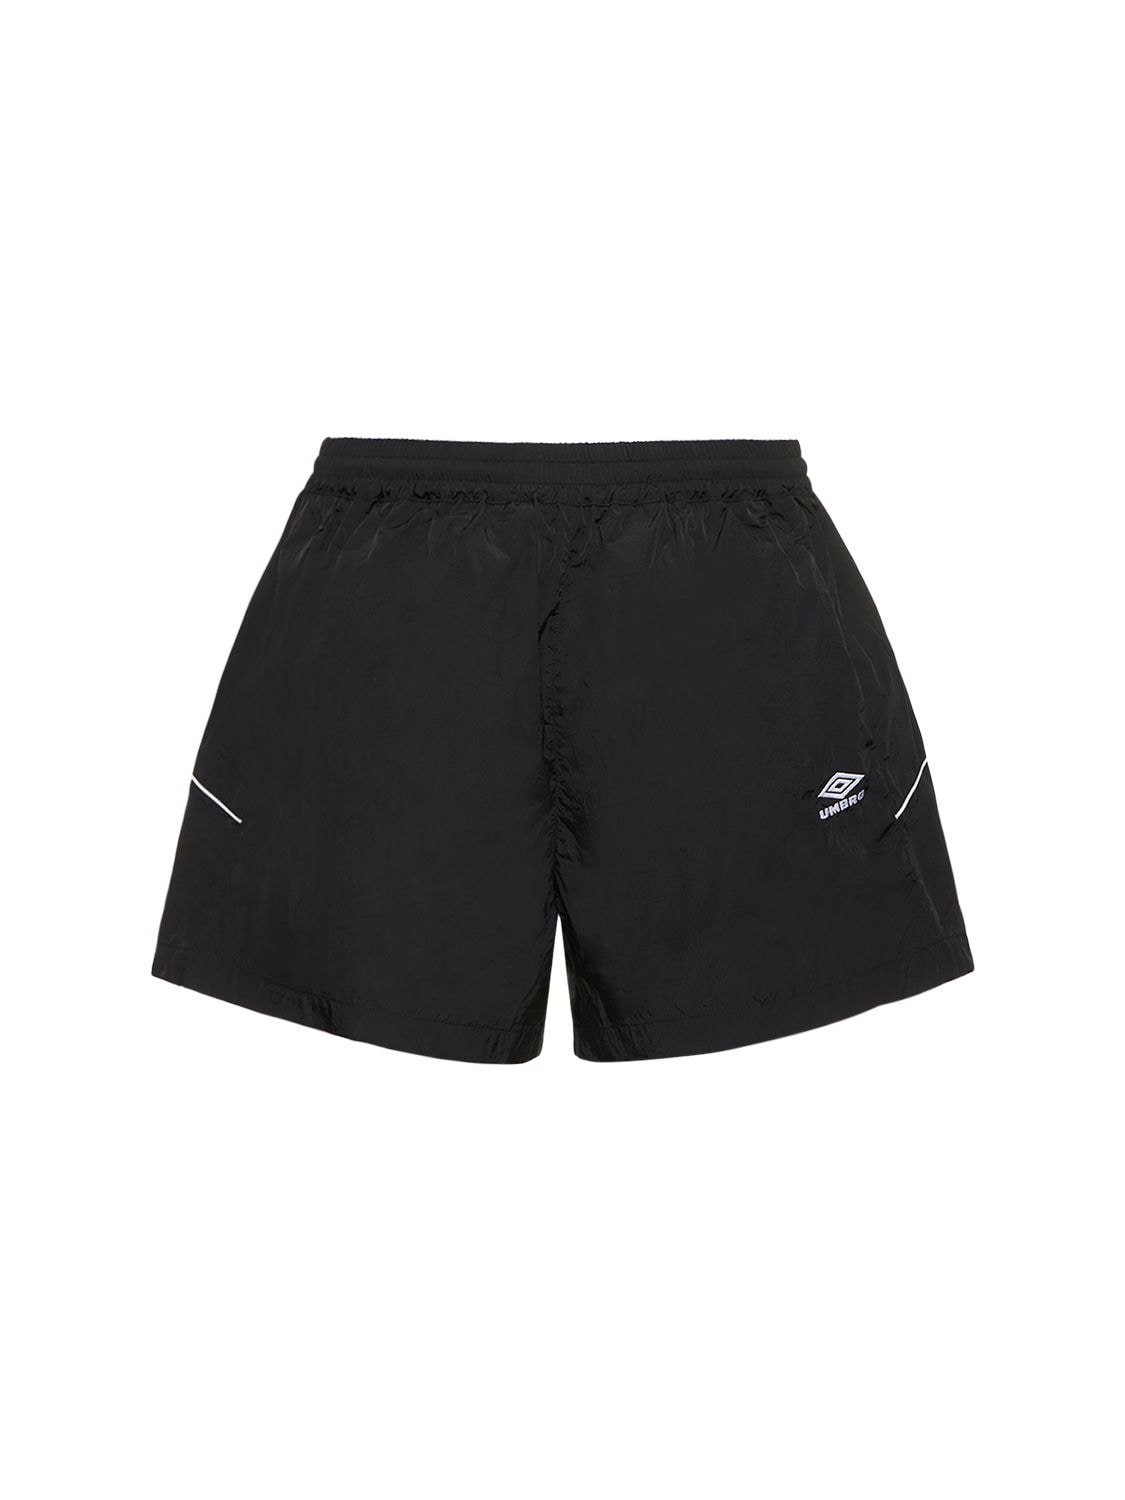 Umbro Nylon Track Shorts In Black